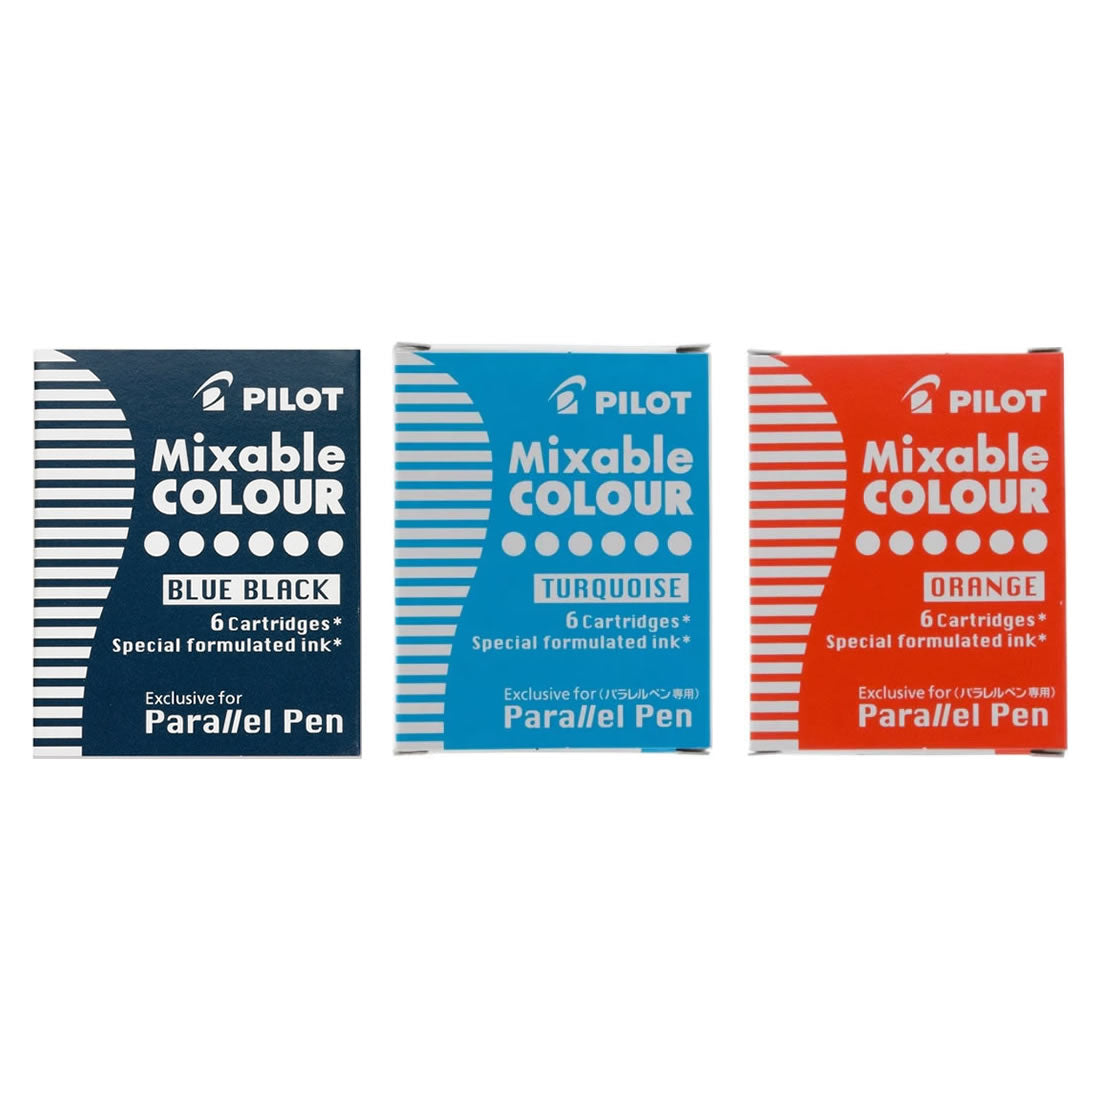 Pilot Mixable COLOUR Assorted Colors Parallel Pen Refills (3 packs)